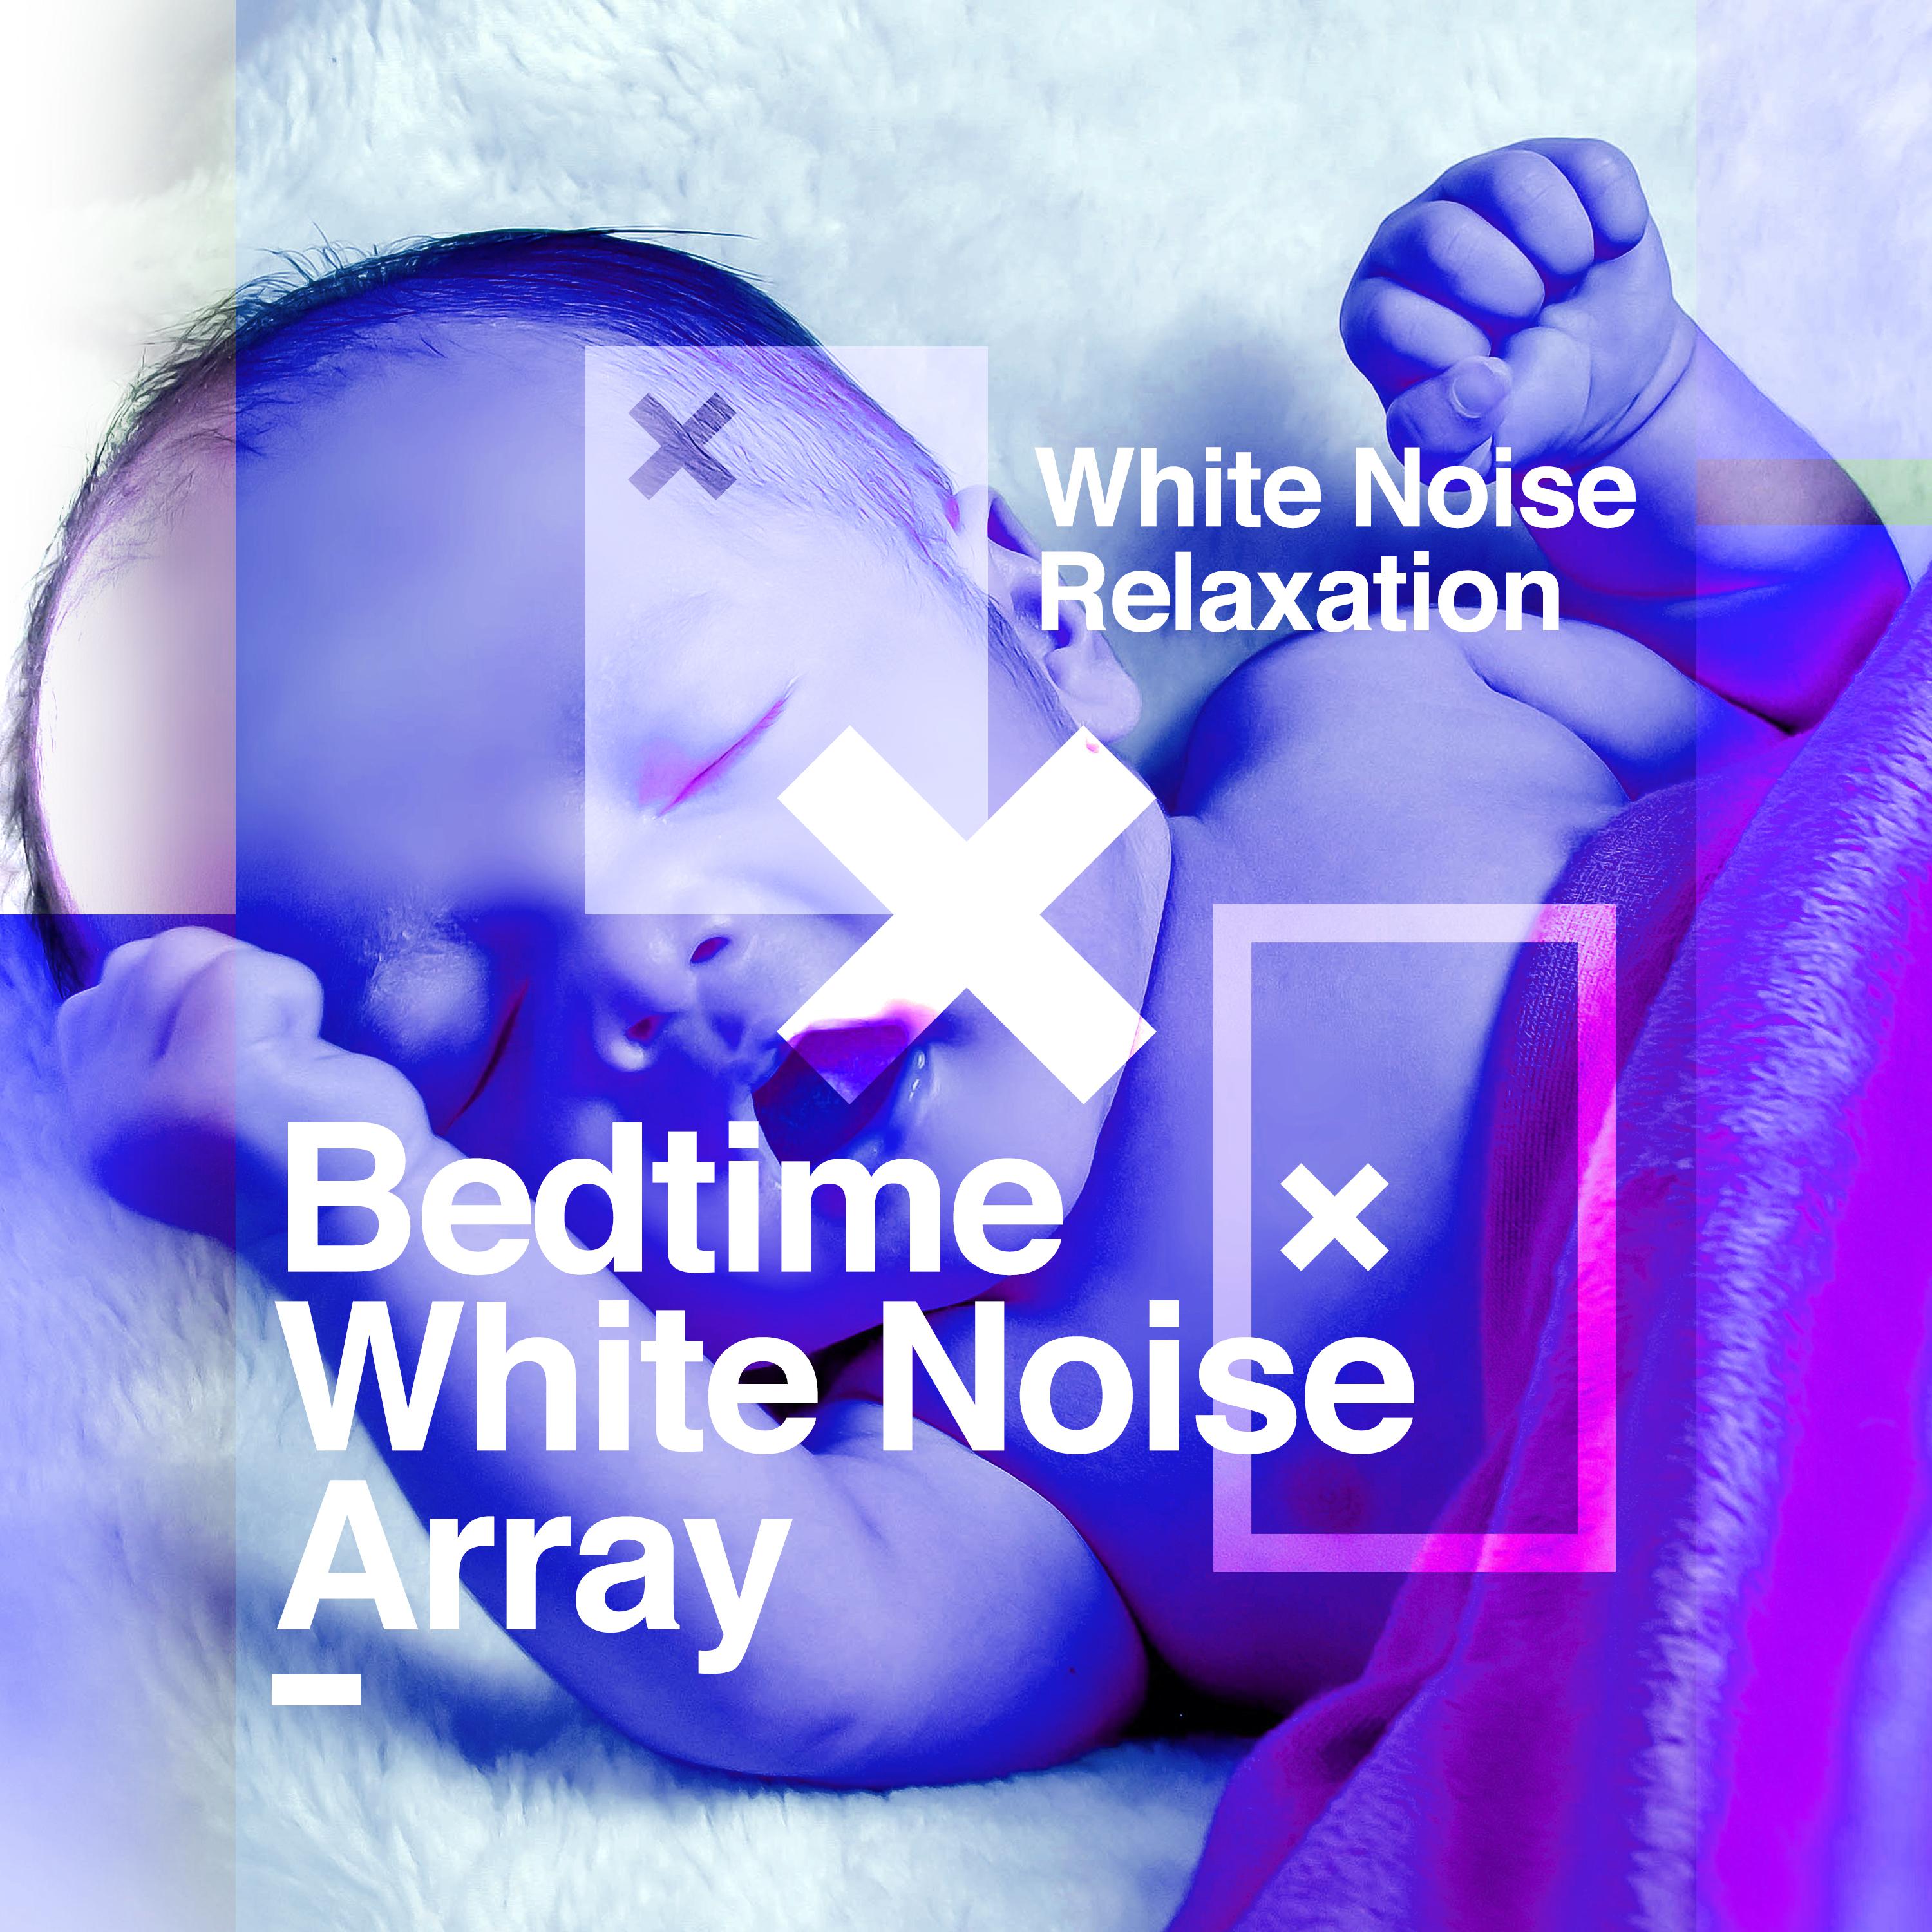 Bedtime White Noise Array